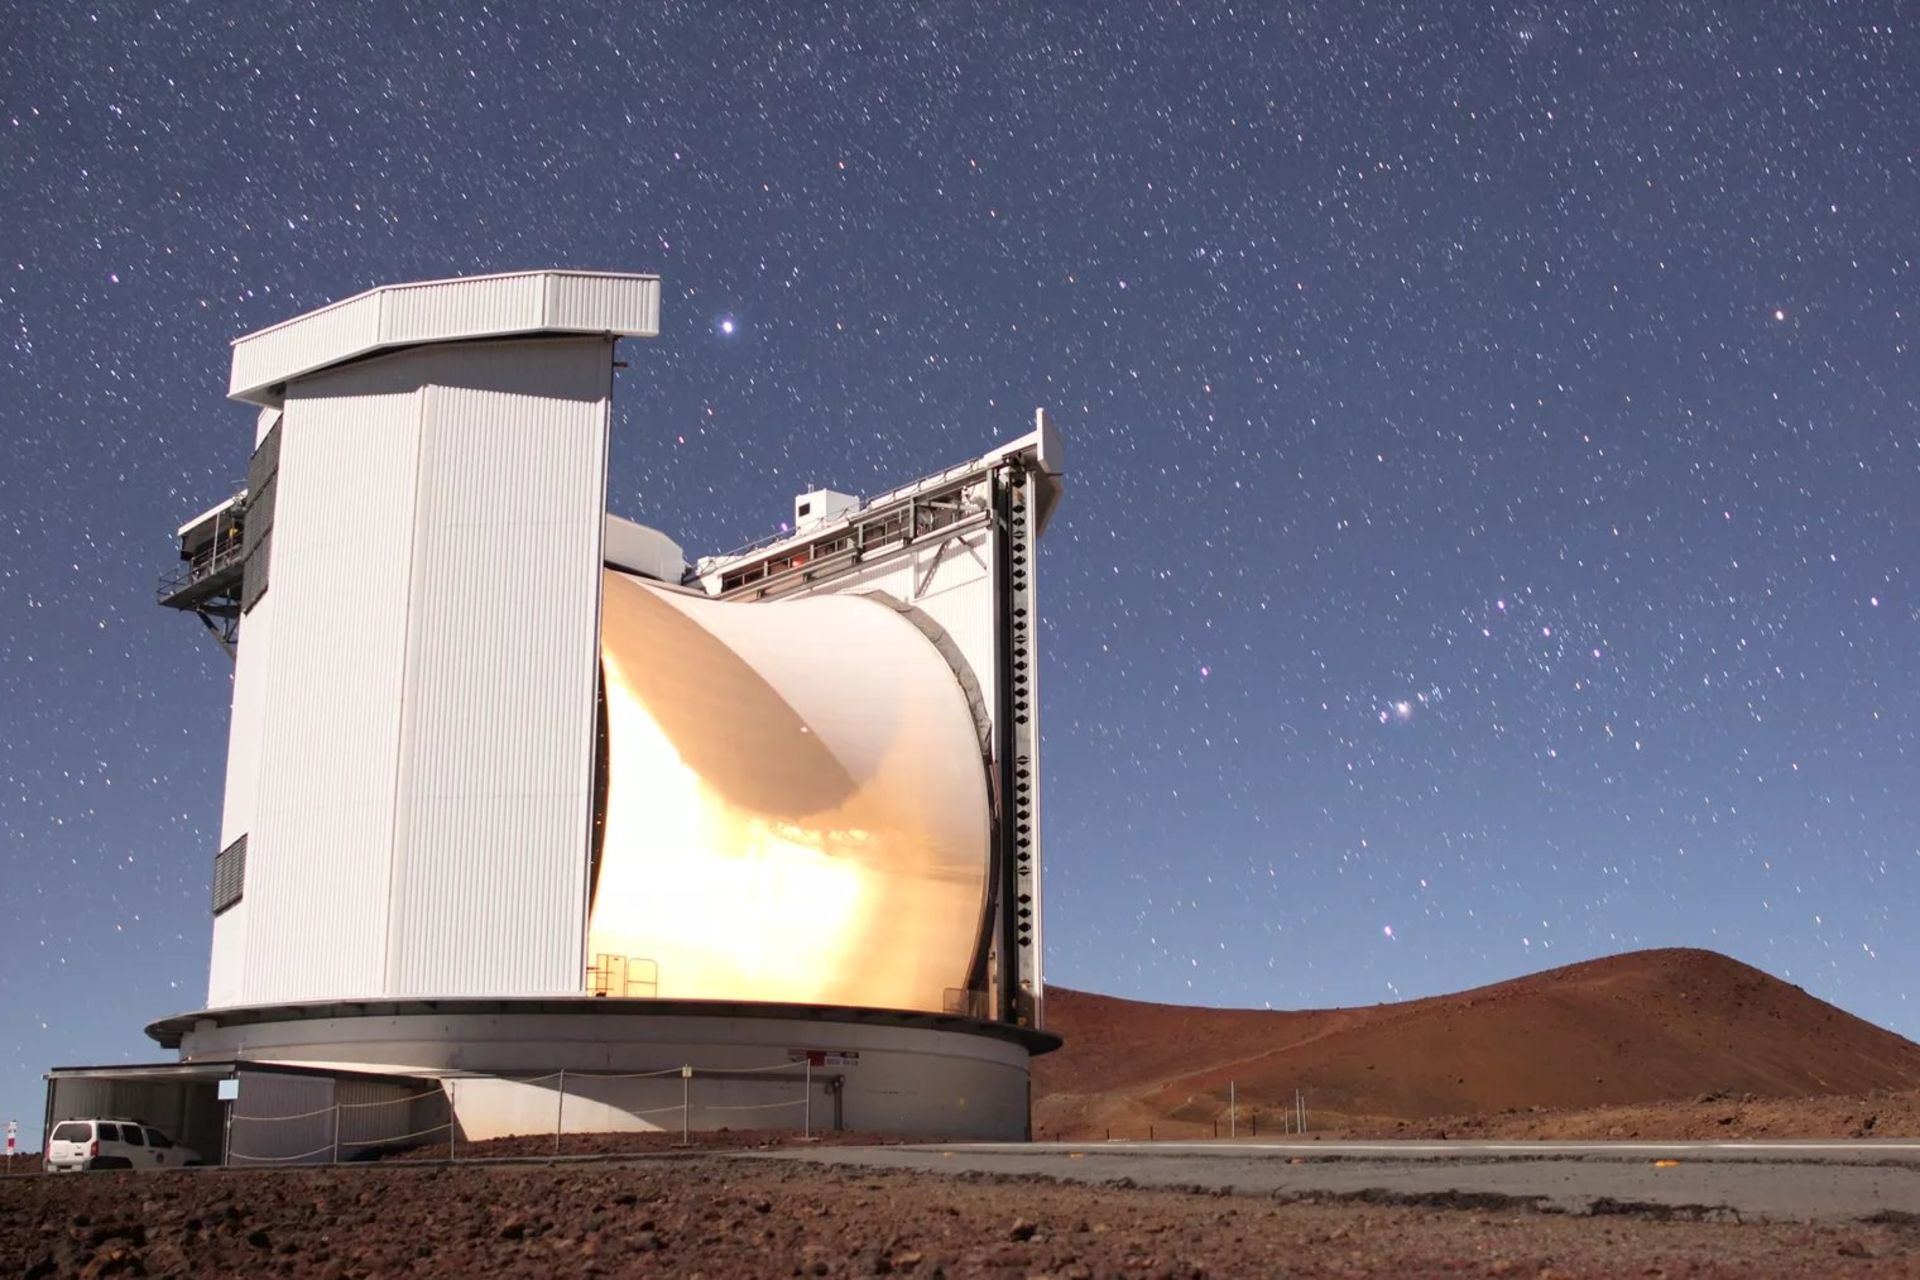 مرجع متخصصين ايران تلسكوپ جيمز كلرك ماكسول در هاوايي